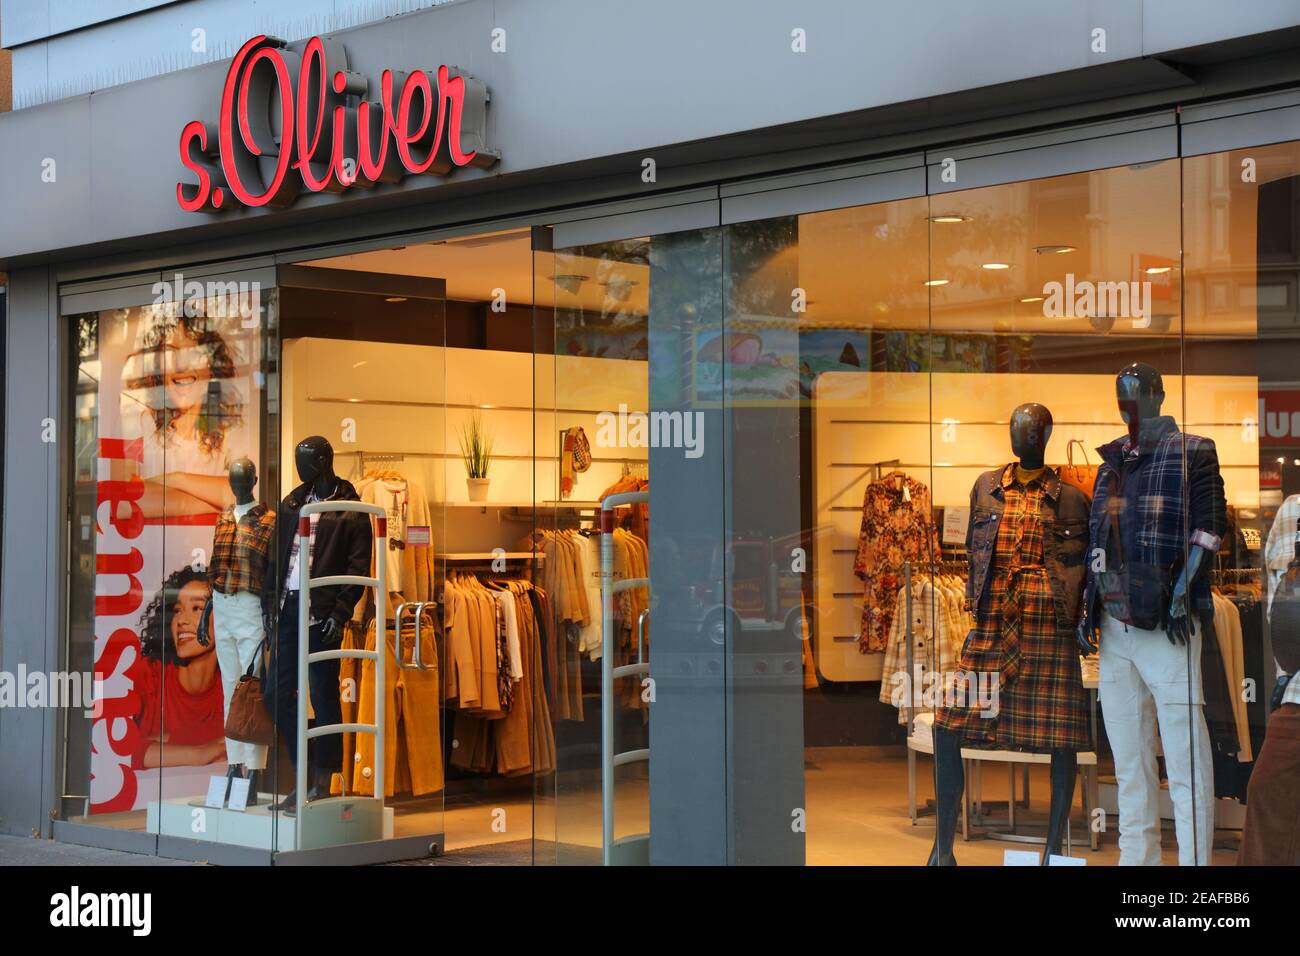 HERNE, DEUTSCHLAND - 17. SEPTEMBER 2020: S.Oliver Modegeschäft in der  Innenstadt von Herne, Deutschland. S.Oliver besitzt über 150  Einzelhandelsgeschäfte Stockfotografie - Alamy